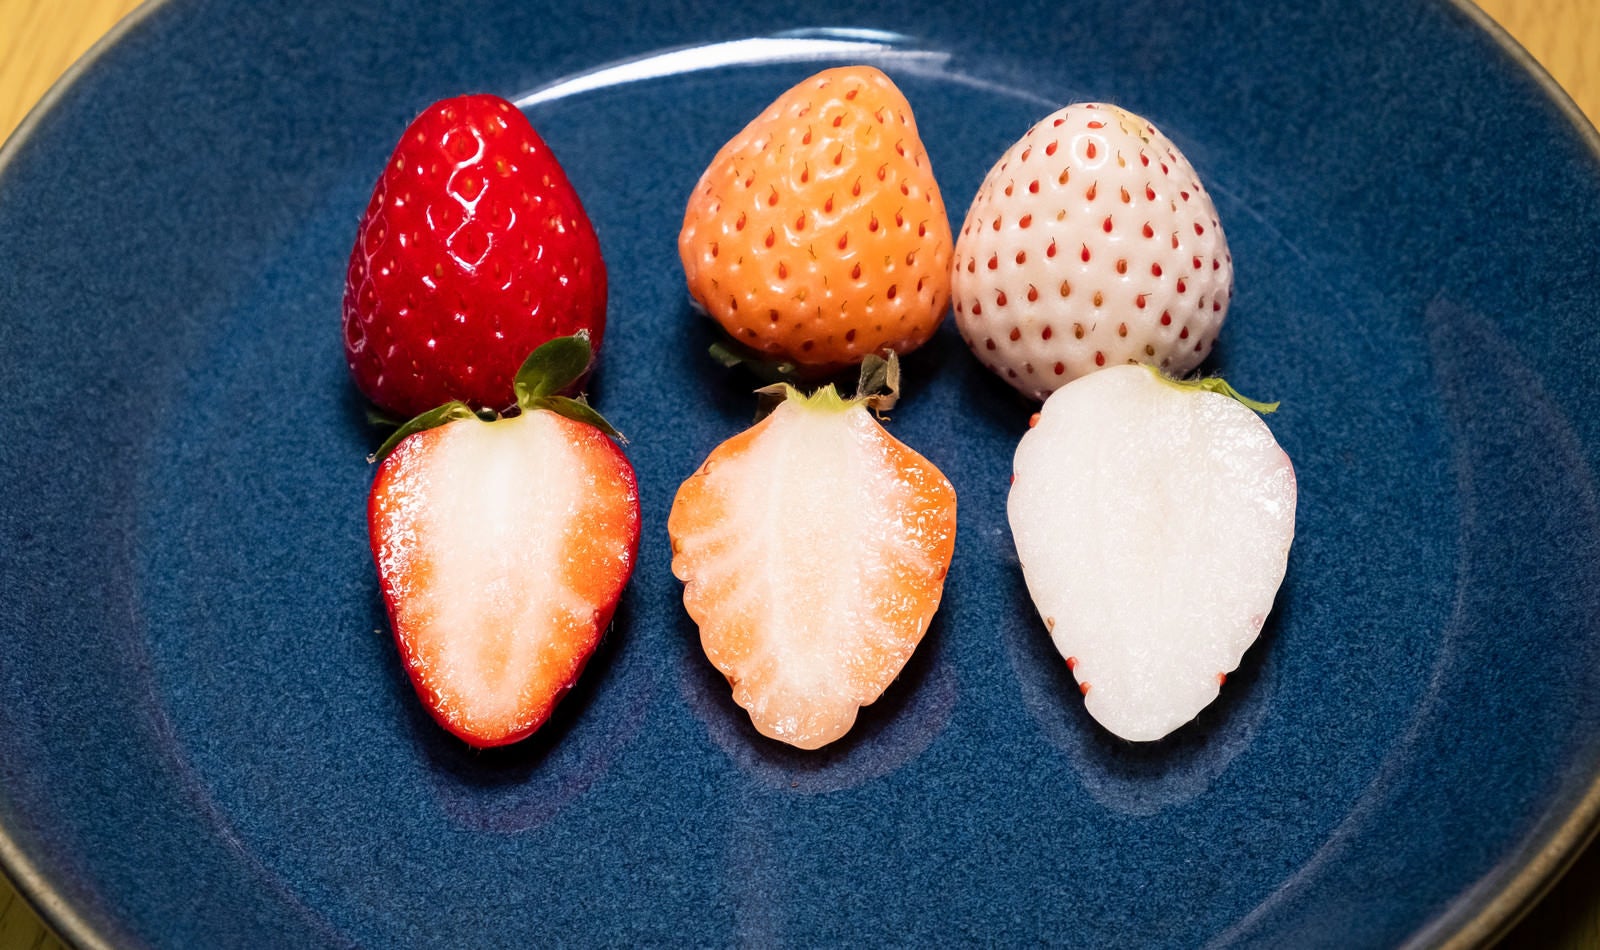 「皿に並べられた三種の苺と断面」の写真